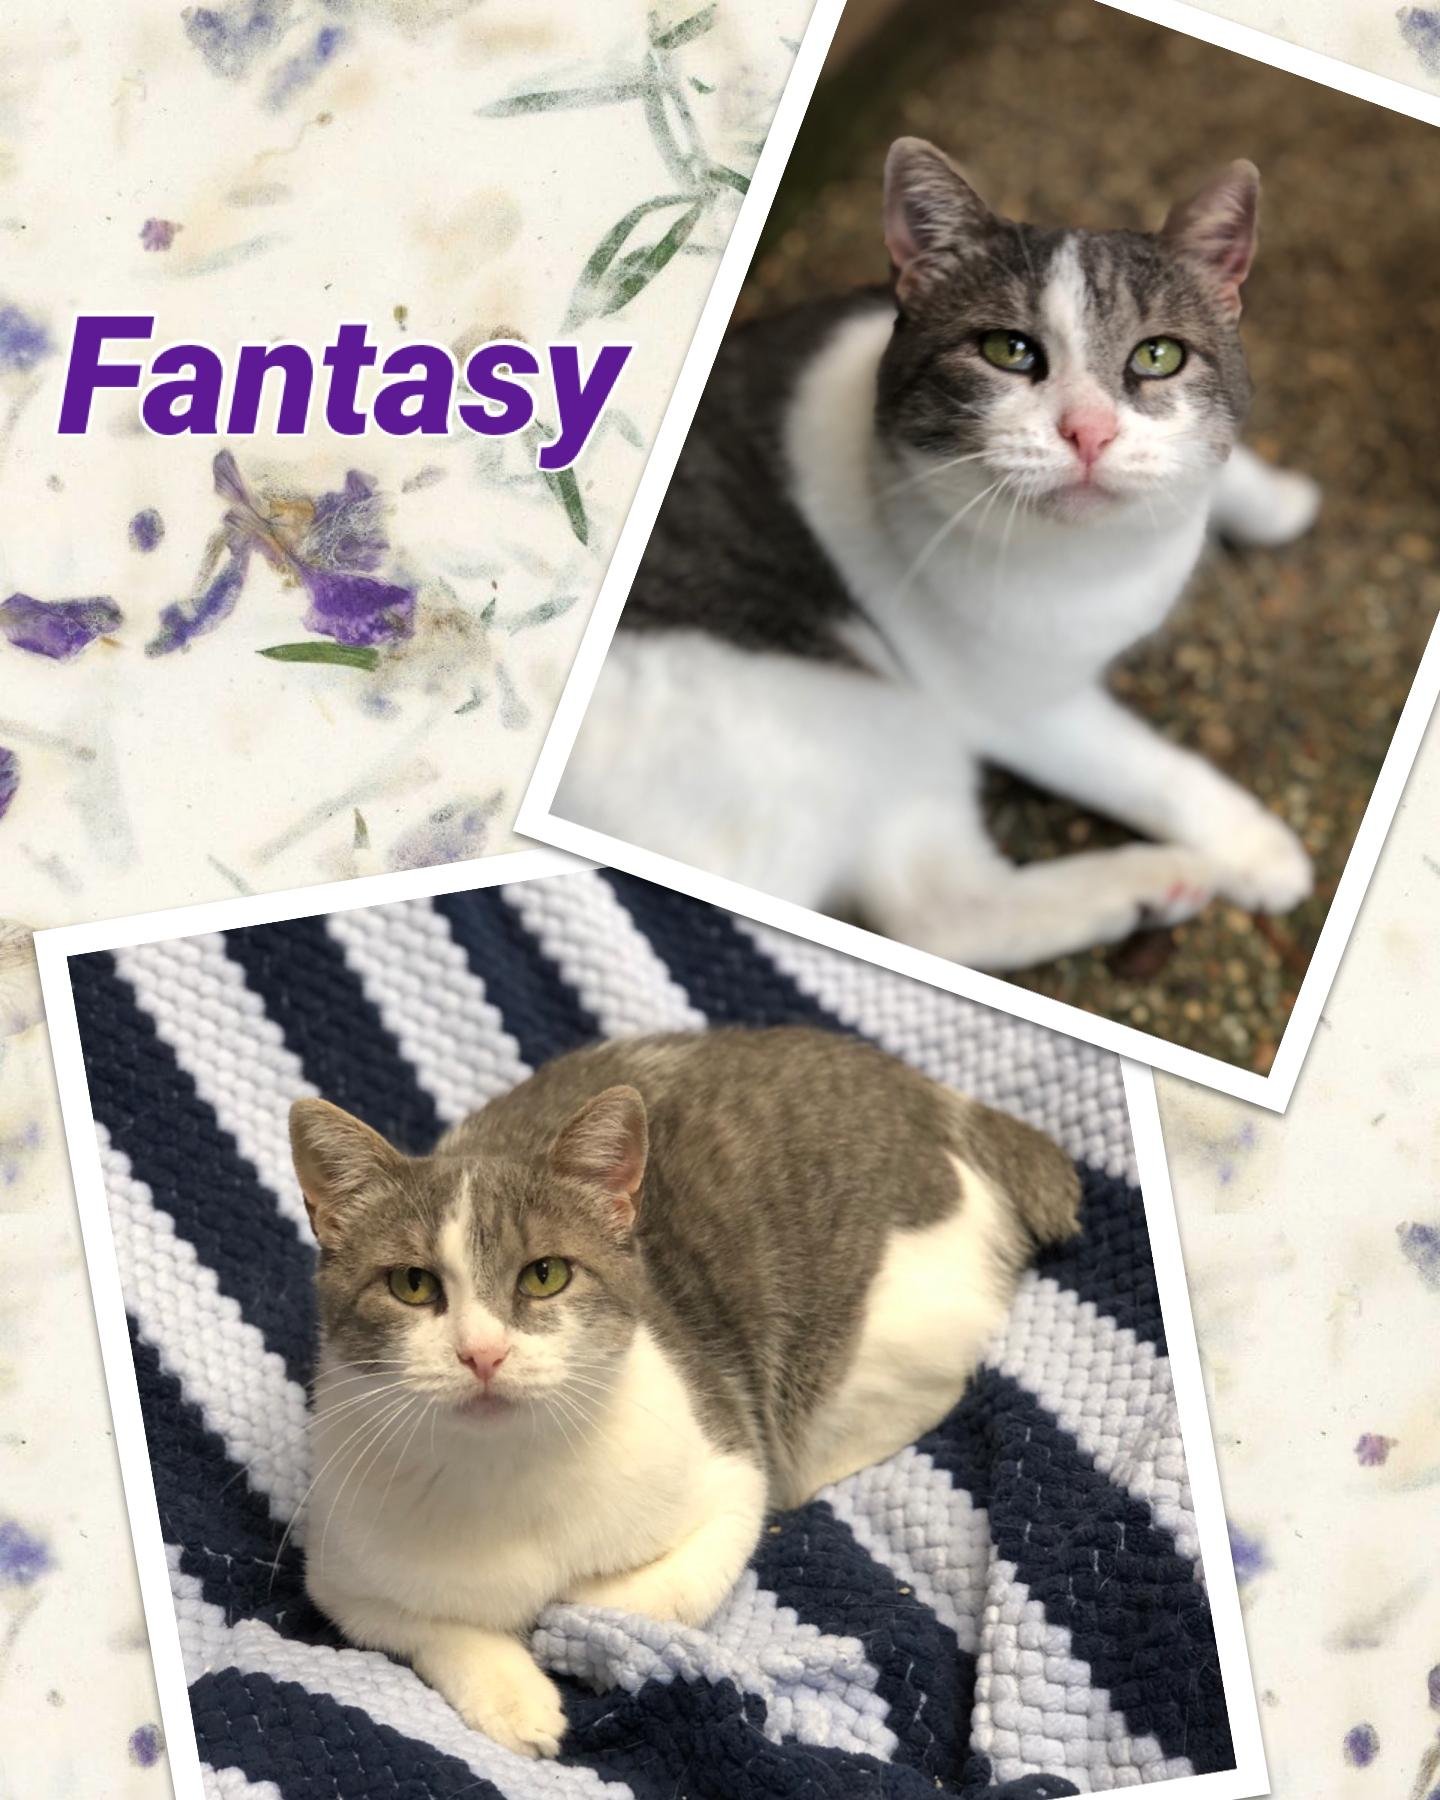 adoptable Cat in Texarkana, TX named Fantasy